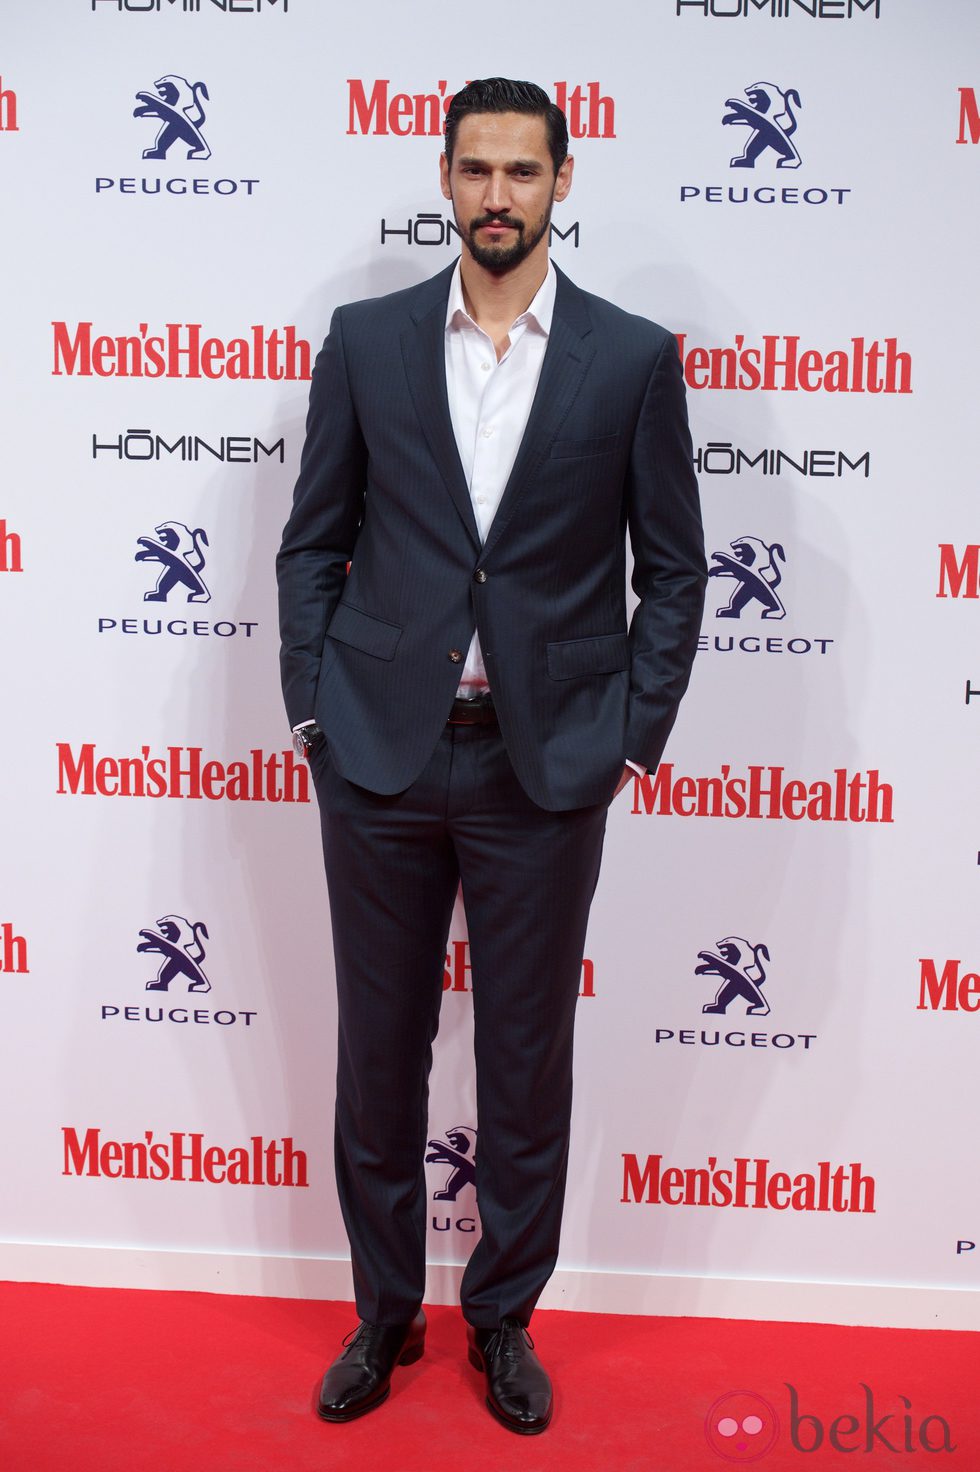 Stany Coppet en la entrega de los Premios Men's Health 2014